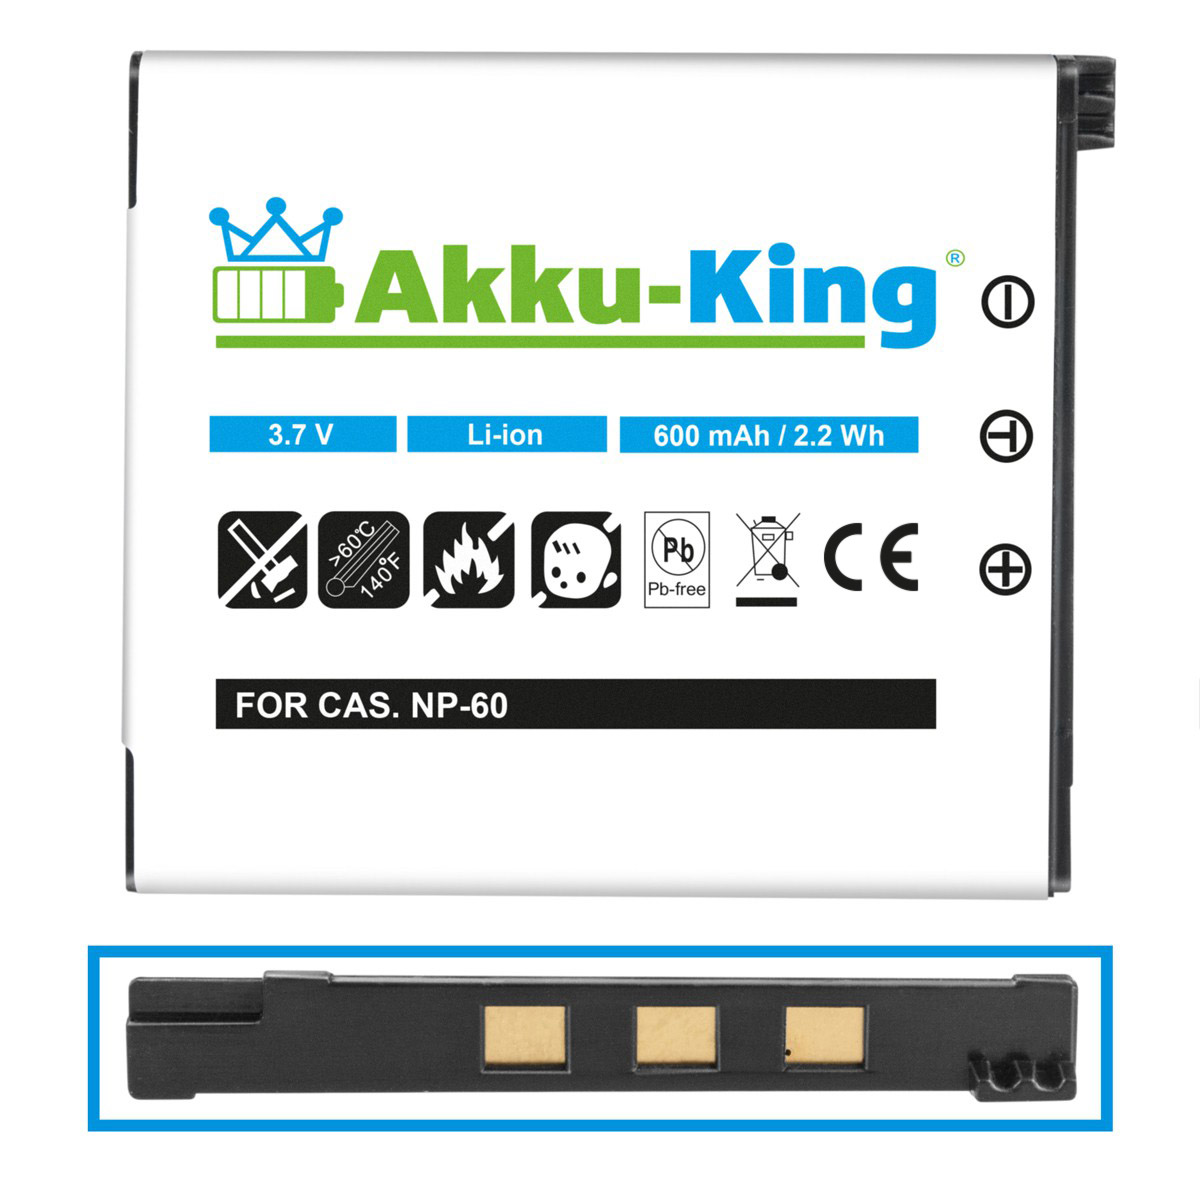 kompatibel Volt, AKKU-KING Casio mit Li-Ion 3.7 Akku 600mAh Kamera-Akku, NP-60